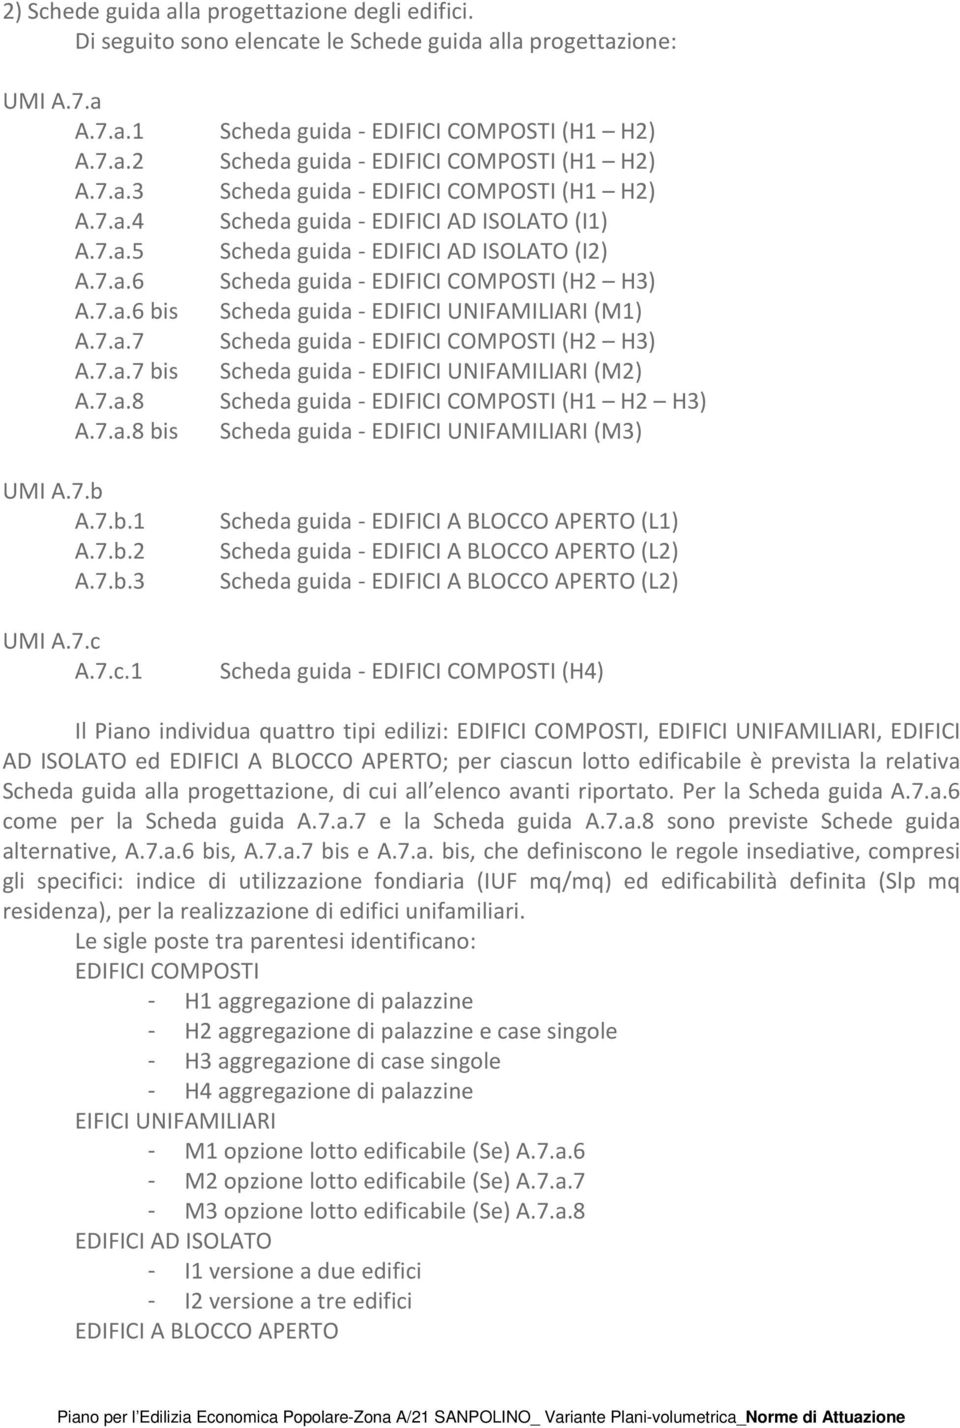 7.a.7 Scheda guida - EDIFICI COMPOSTI (H2 H3) A.7.a.7 bis Scheda guida - EDIFICI UNIFAMILIARI (M2) A.7.a.8 Scheda guida - EDIFICI COMPOSTI (H1 H2 H3) A.7.a.8 bis Scheda guida - EDIFICI UNIFAMILIARI (M3) UMI A.